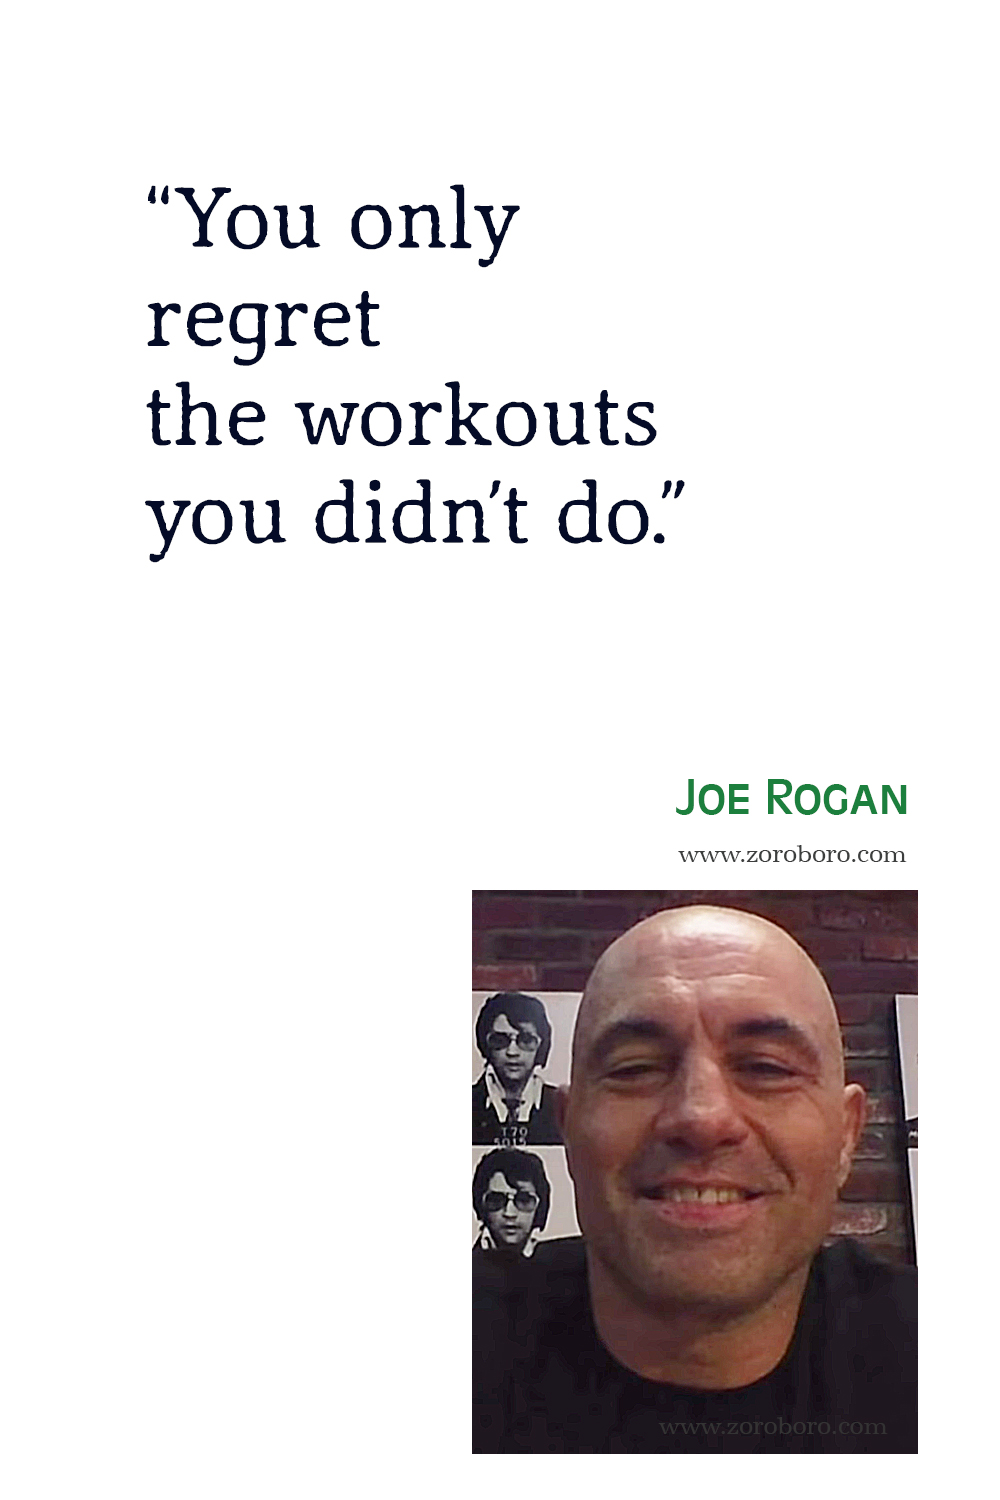 Joe Rogan Quotes, Joe Rogan Podcast Quotes, Joe Rogan Inspirational Quotes, Joe Rogan Motivational Quotes, Joe Rogan Jre